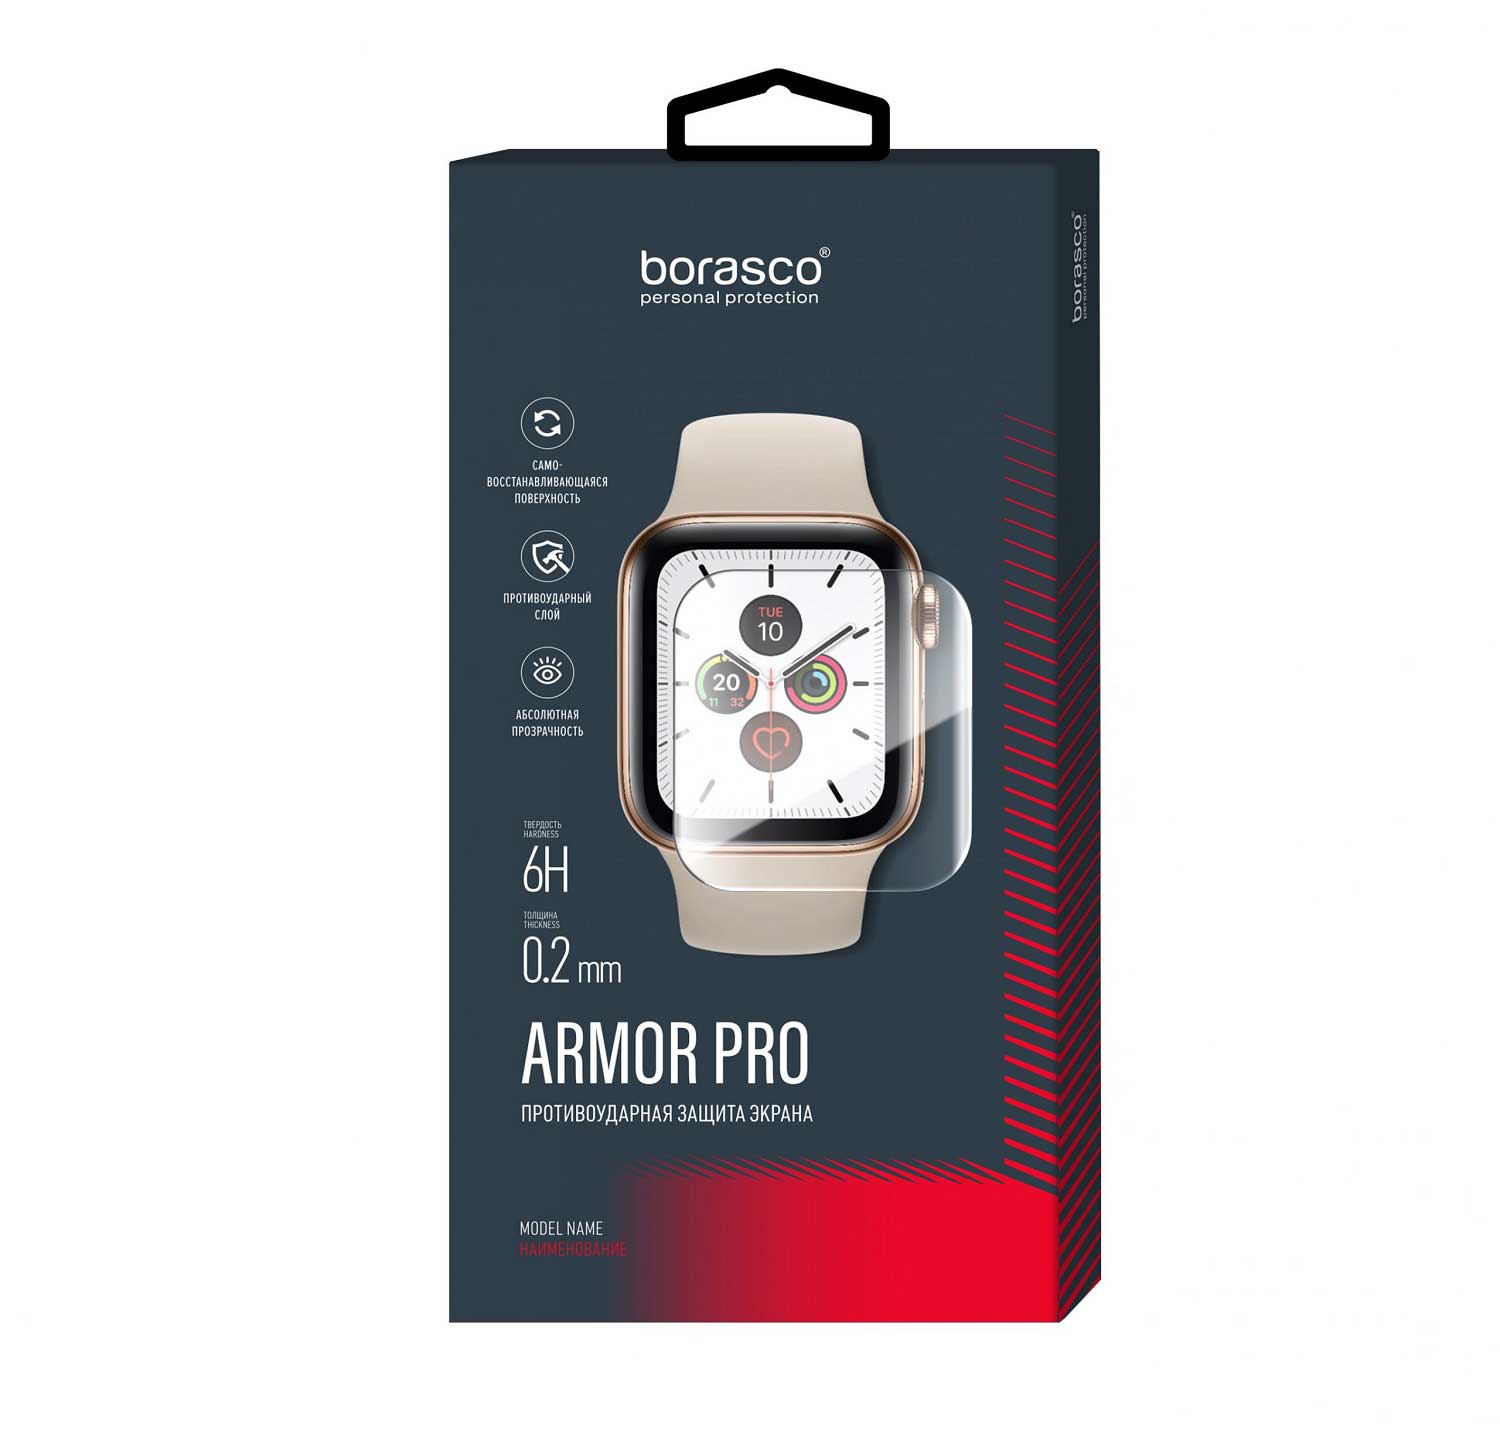 Защита экрана BoraSCO Armor Pro для Xiaomi Mi Band 6 матовый защита экрана borasco armor pro для honor band 3 матовый